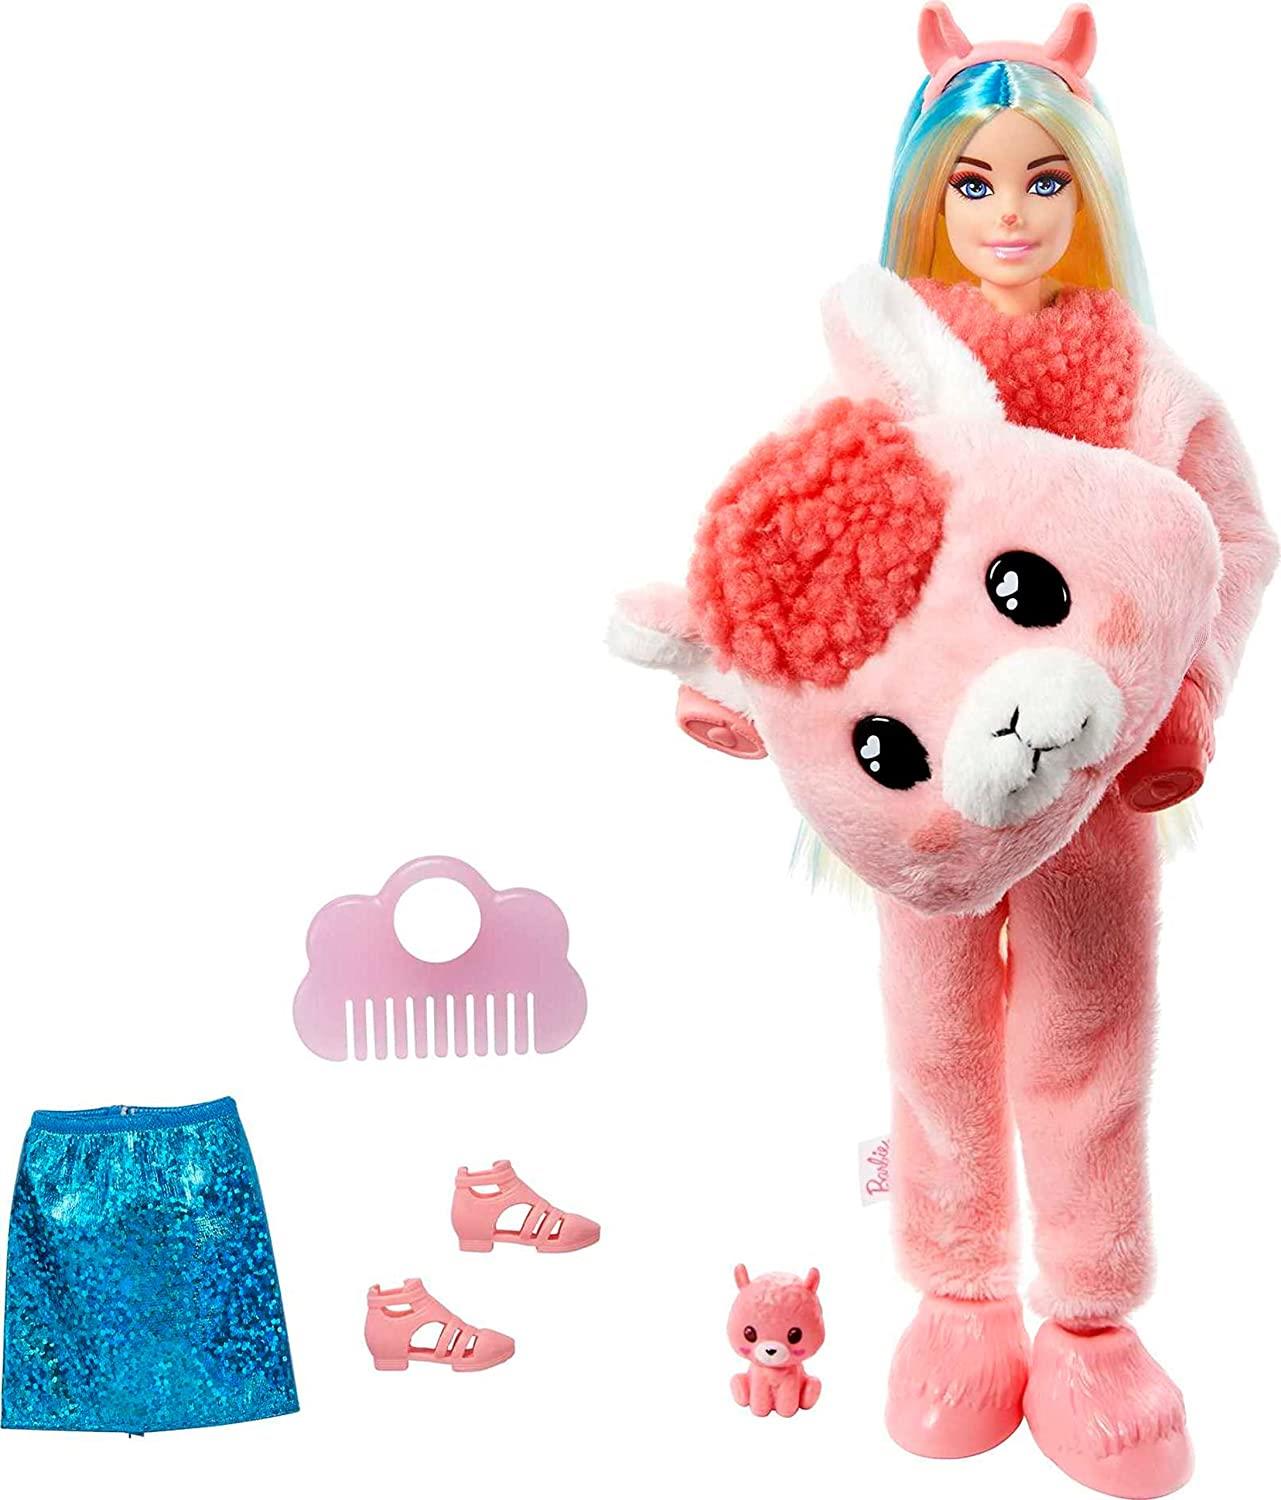 Barbie Barbie Doll Barbie Cutie Reveal Doll with Llama Plush